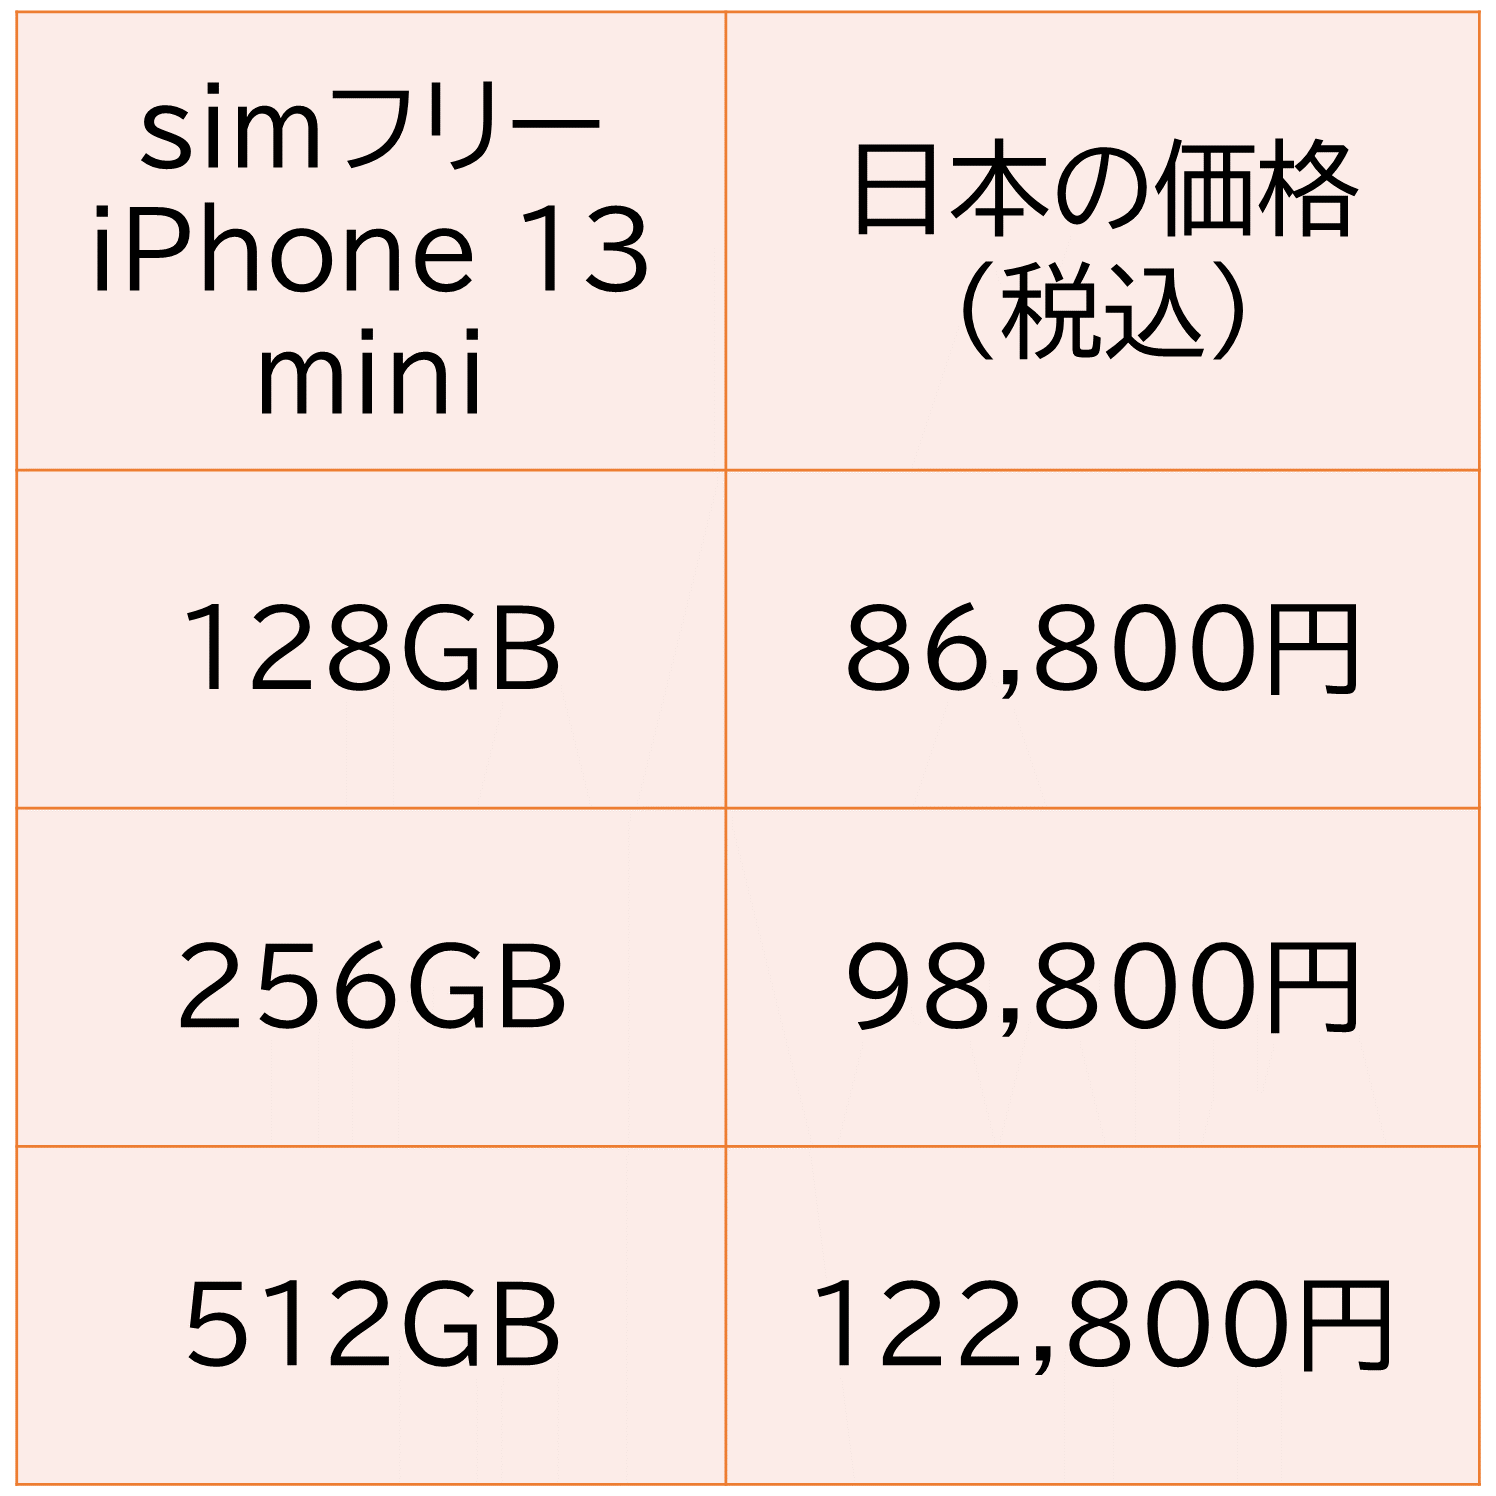 simフリーiPhone 13mini 第三世代の販売価格